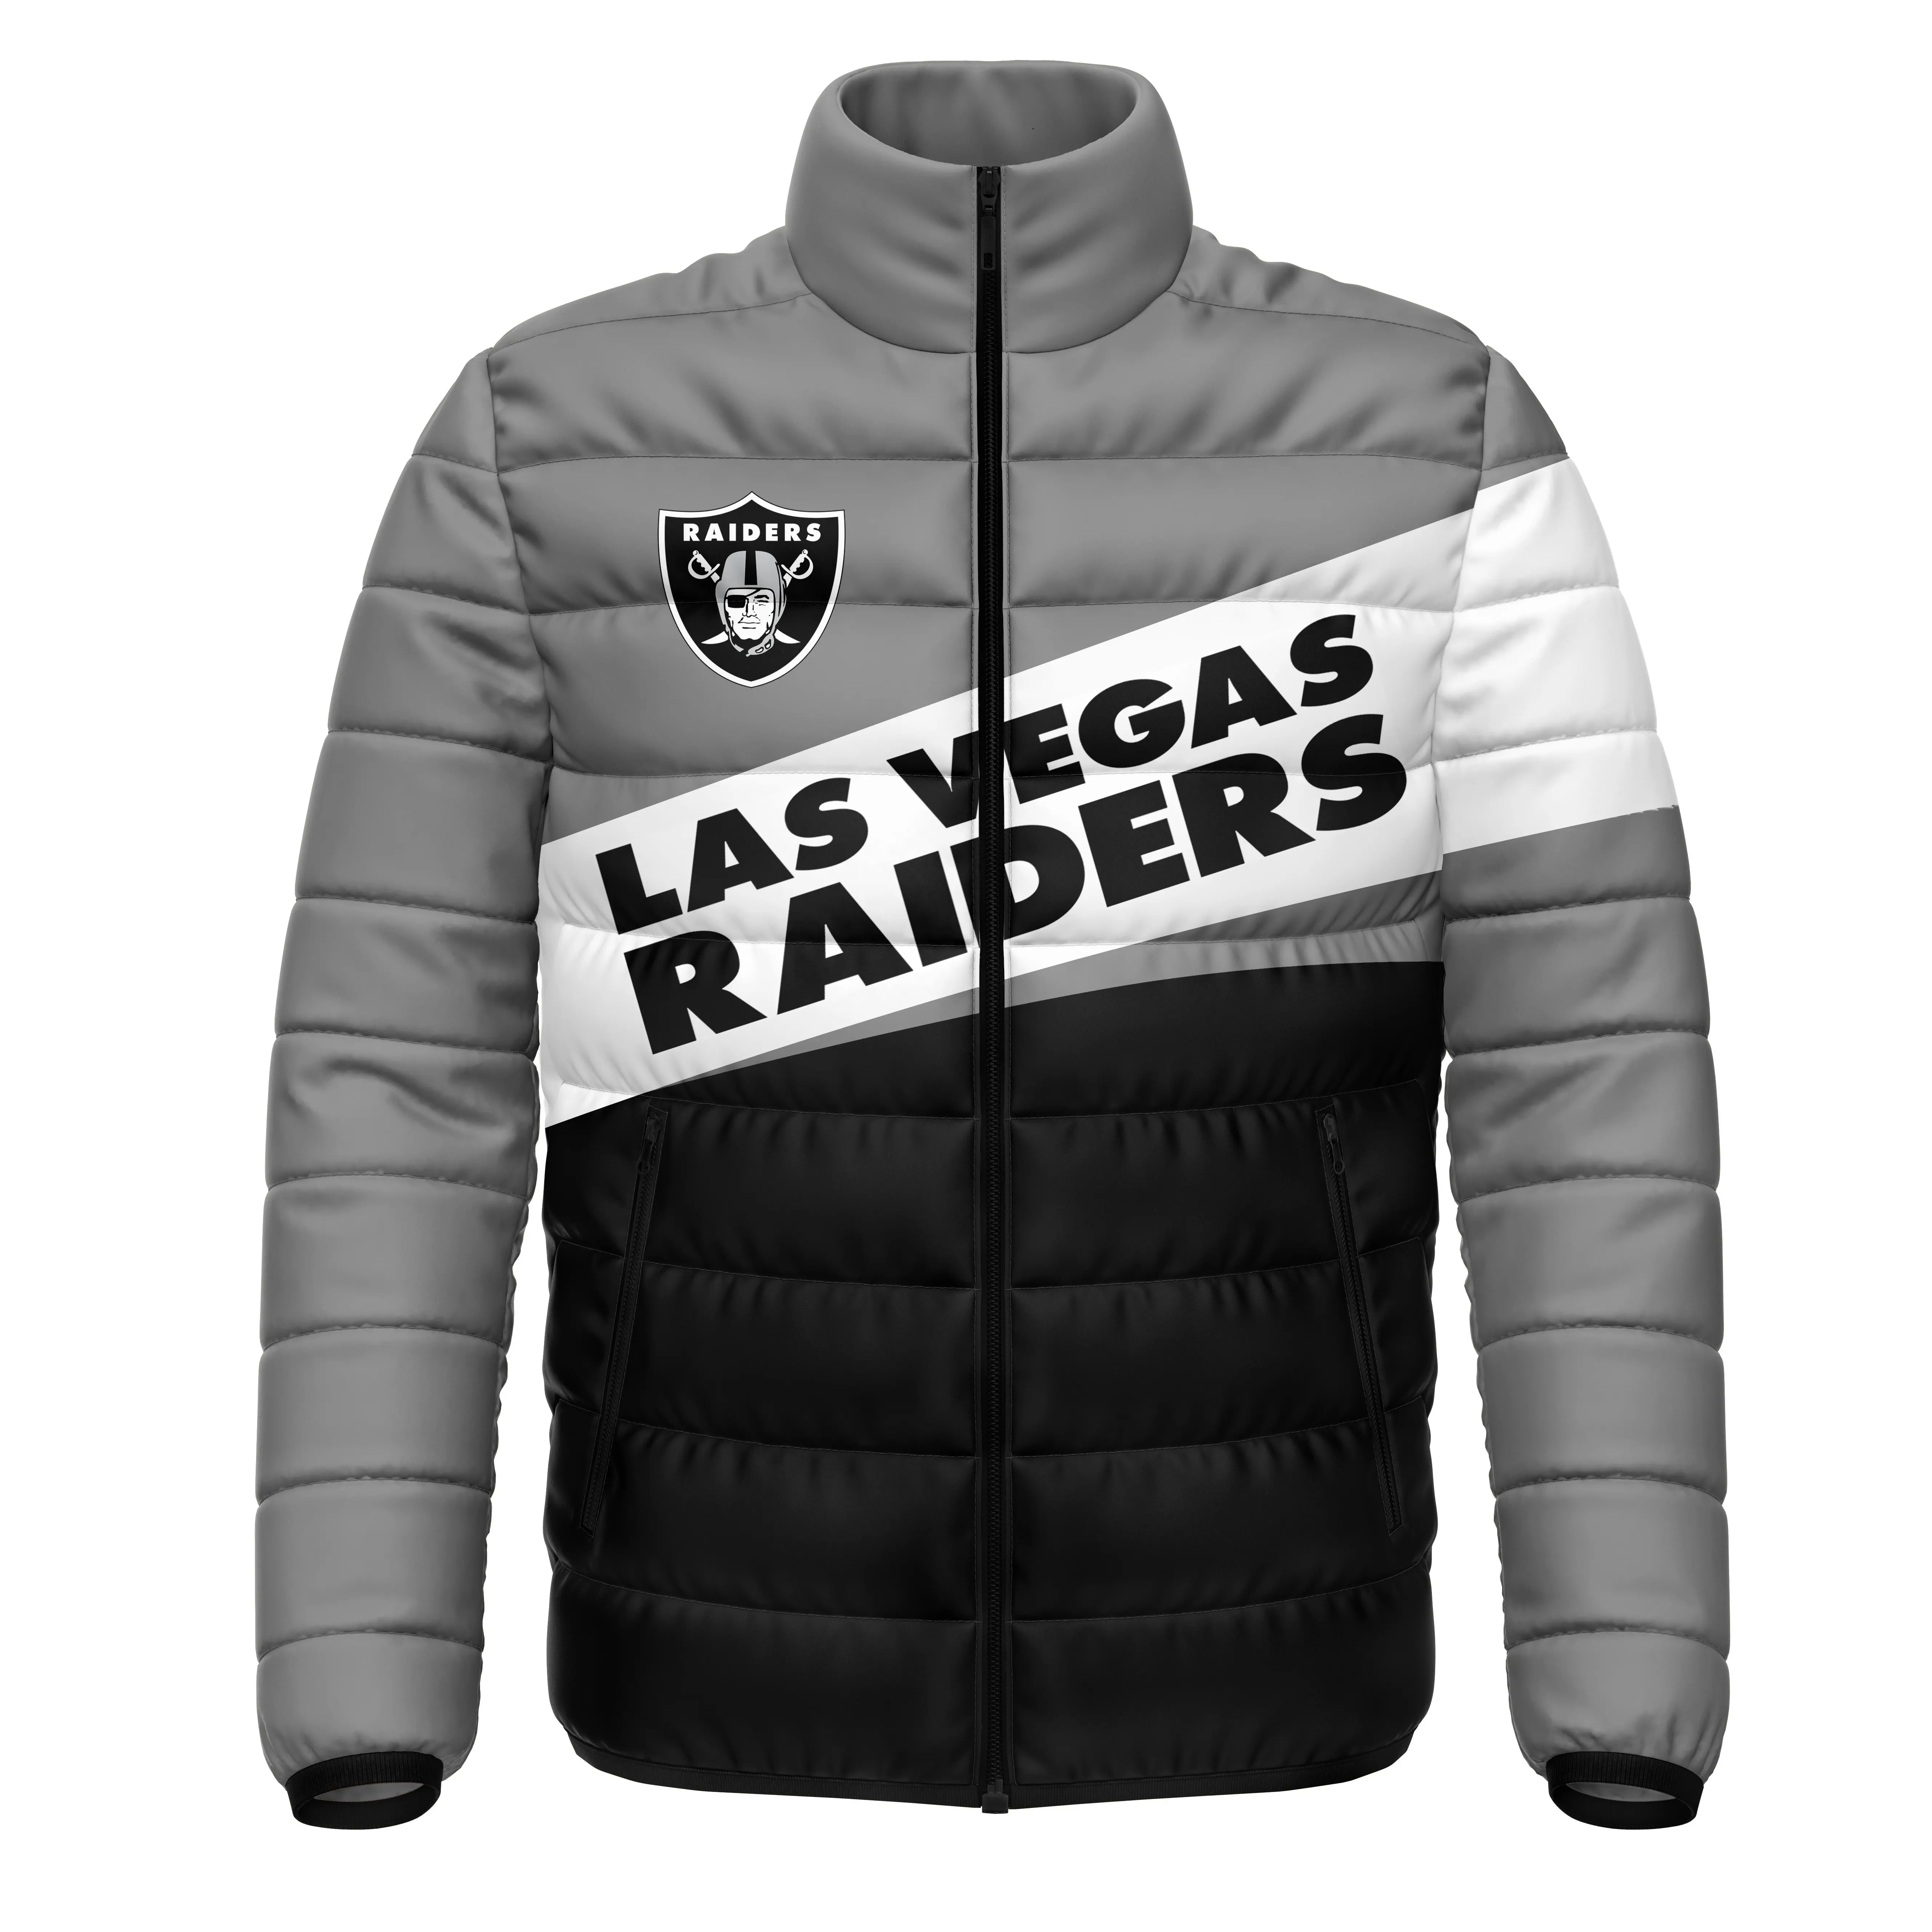 2021 özel kirpi ceketler toptan promosyon rüzgar geçirmez NFL 32 takım Las Vegas kirpi ceketler erkekler için